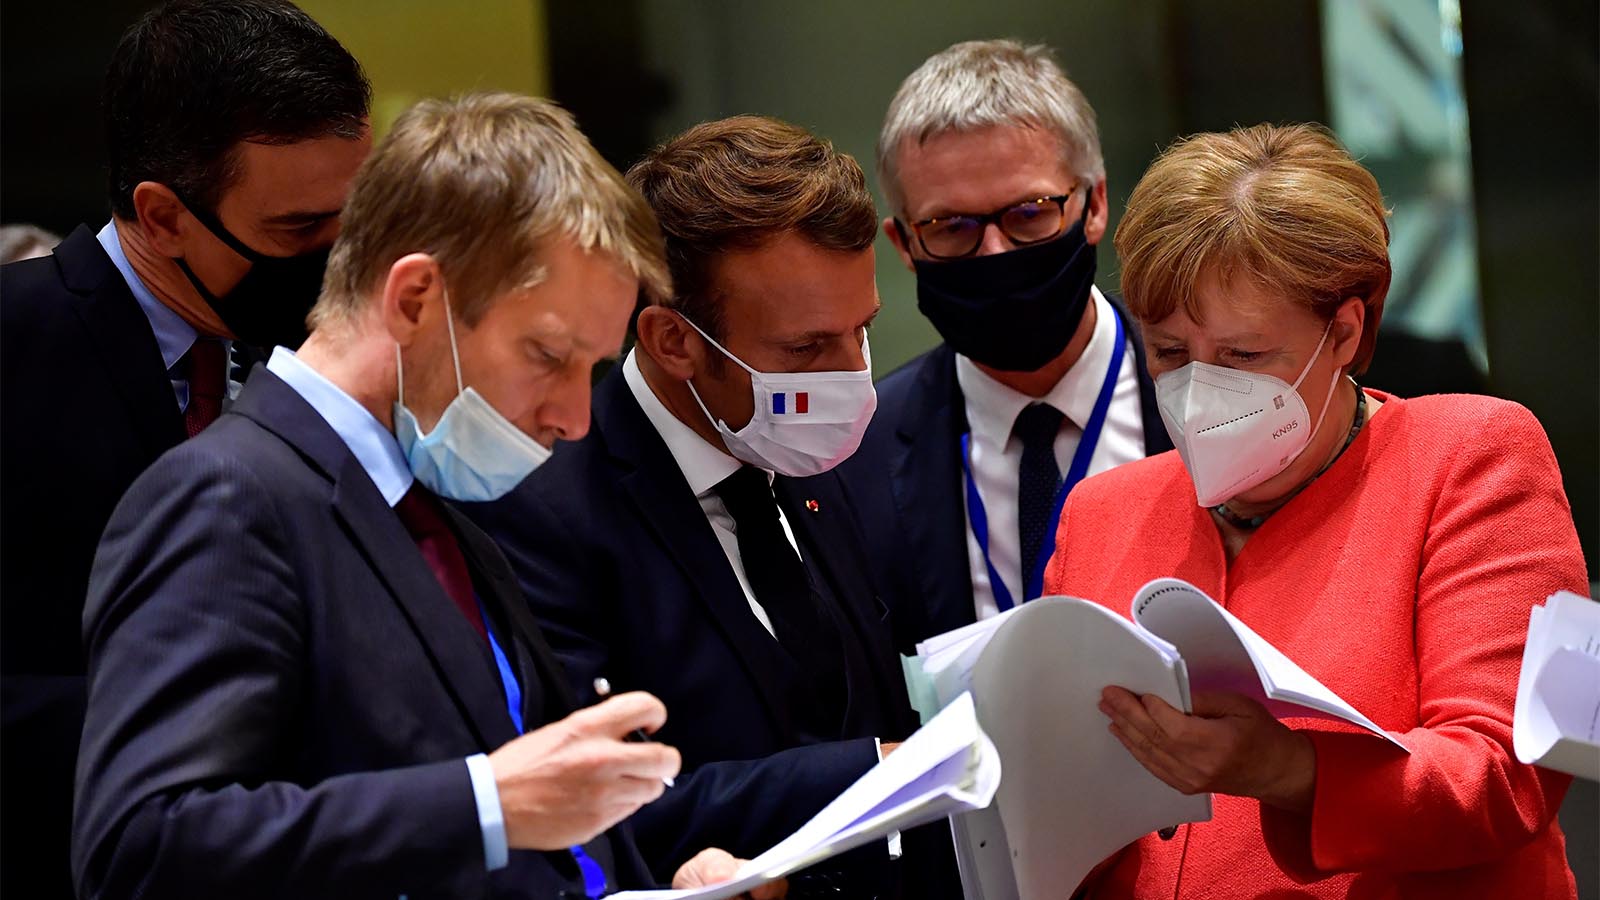 קנצלרית גרמניה אנגלה מרקל ונשיא צרפת עמנואל מקרון מעיניים בתכנית הכלכלית של האיחוד האירופי במהלך ועידת האיחוד. 20 ביולי (John Thys, Pool Photo via AP)